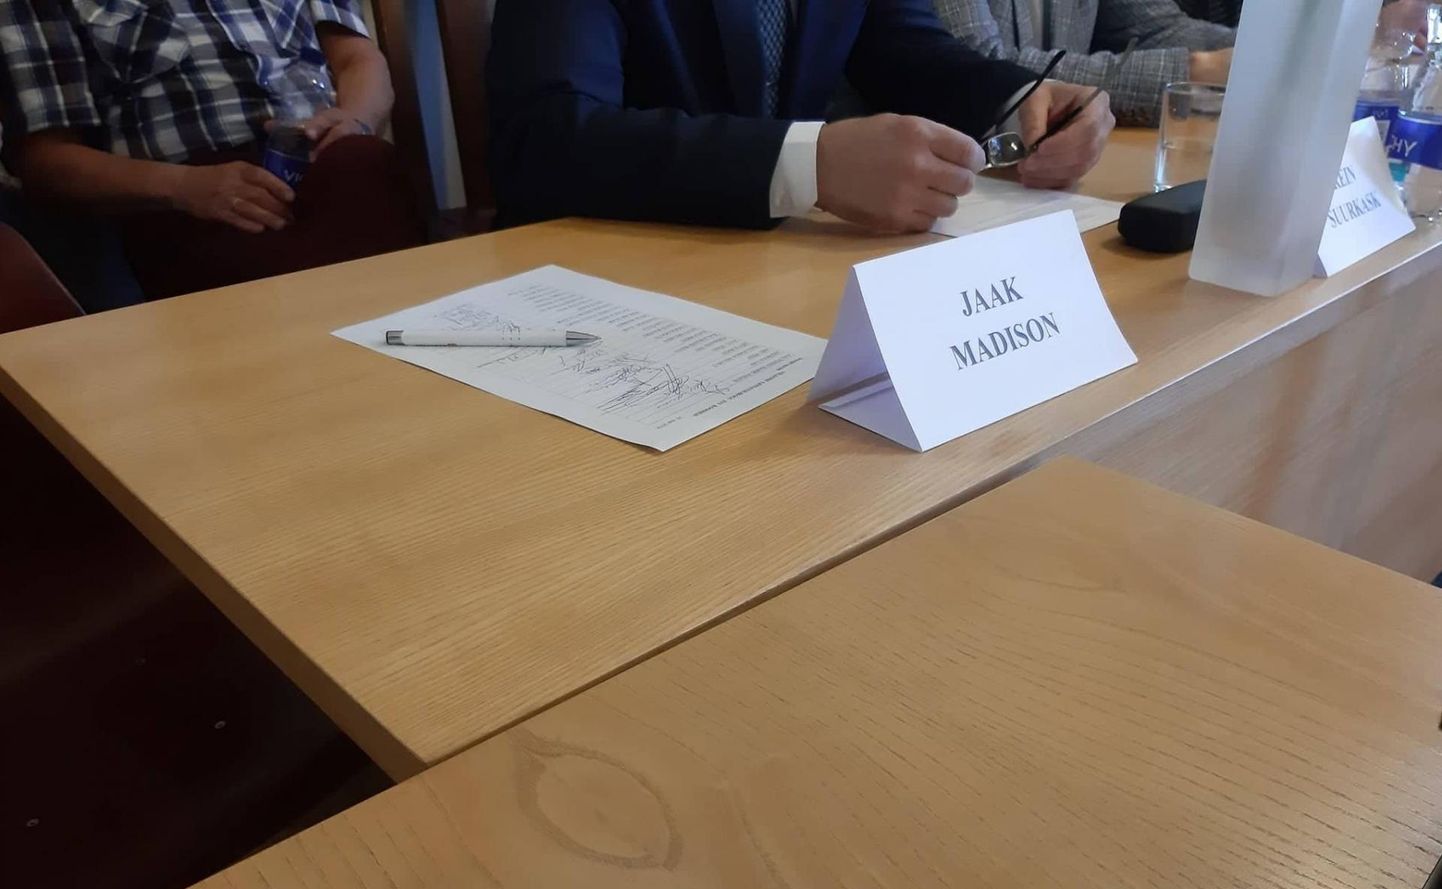 Eesti Konservatiivse Rahvaerakonna esindaja Jaak Madison mai istungile ei jõudnud ning tema saldoks jäi Viljandi volikogus osalemine kaheksal istungil 20 võimalikust.